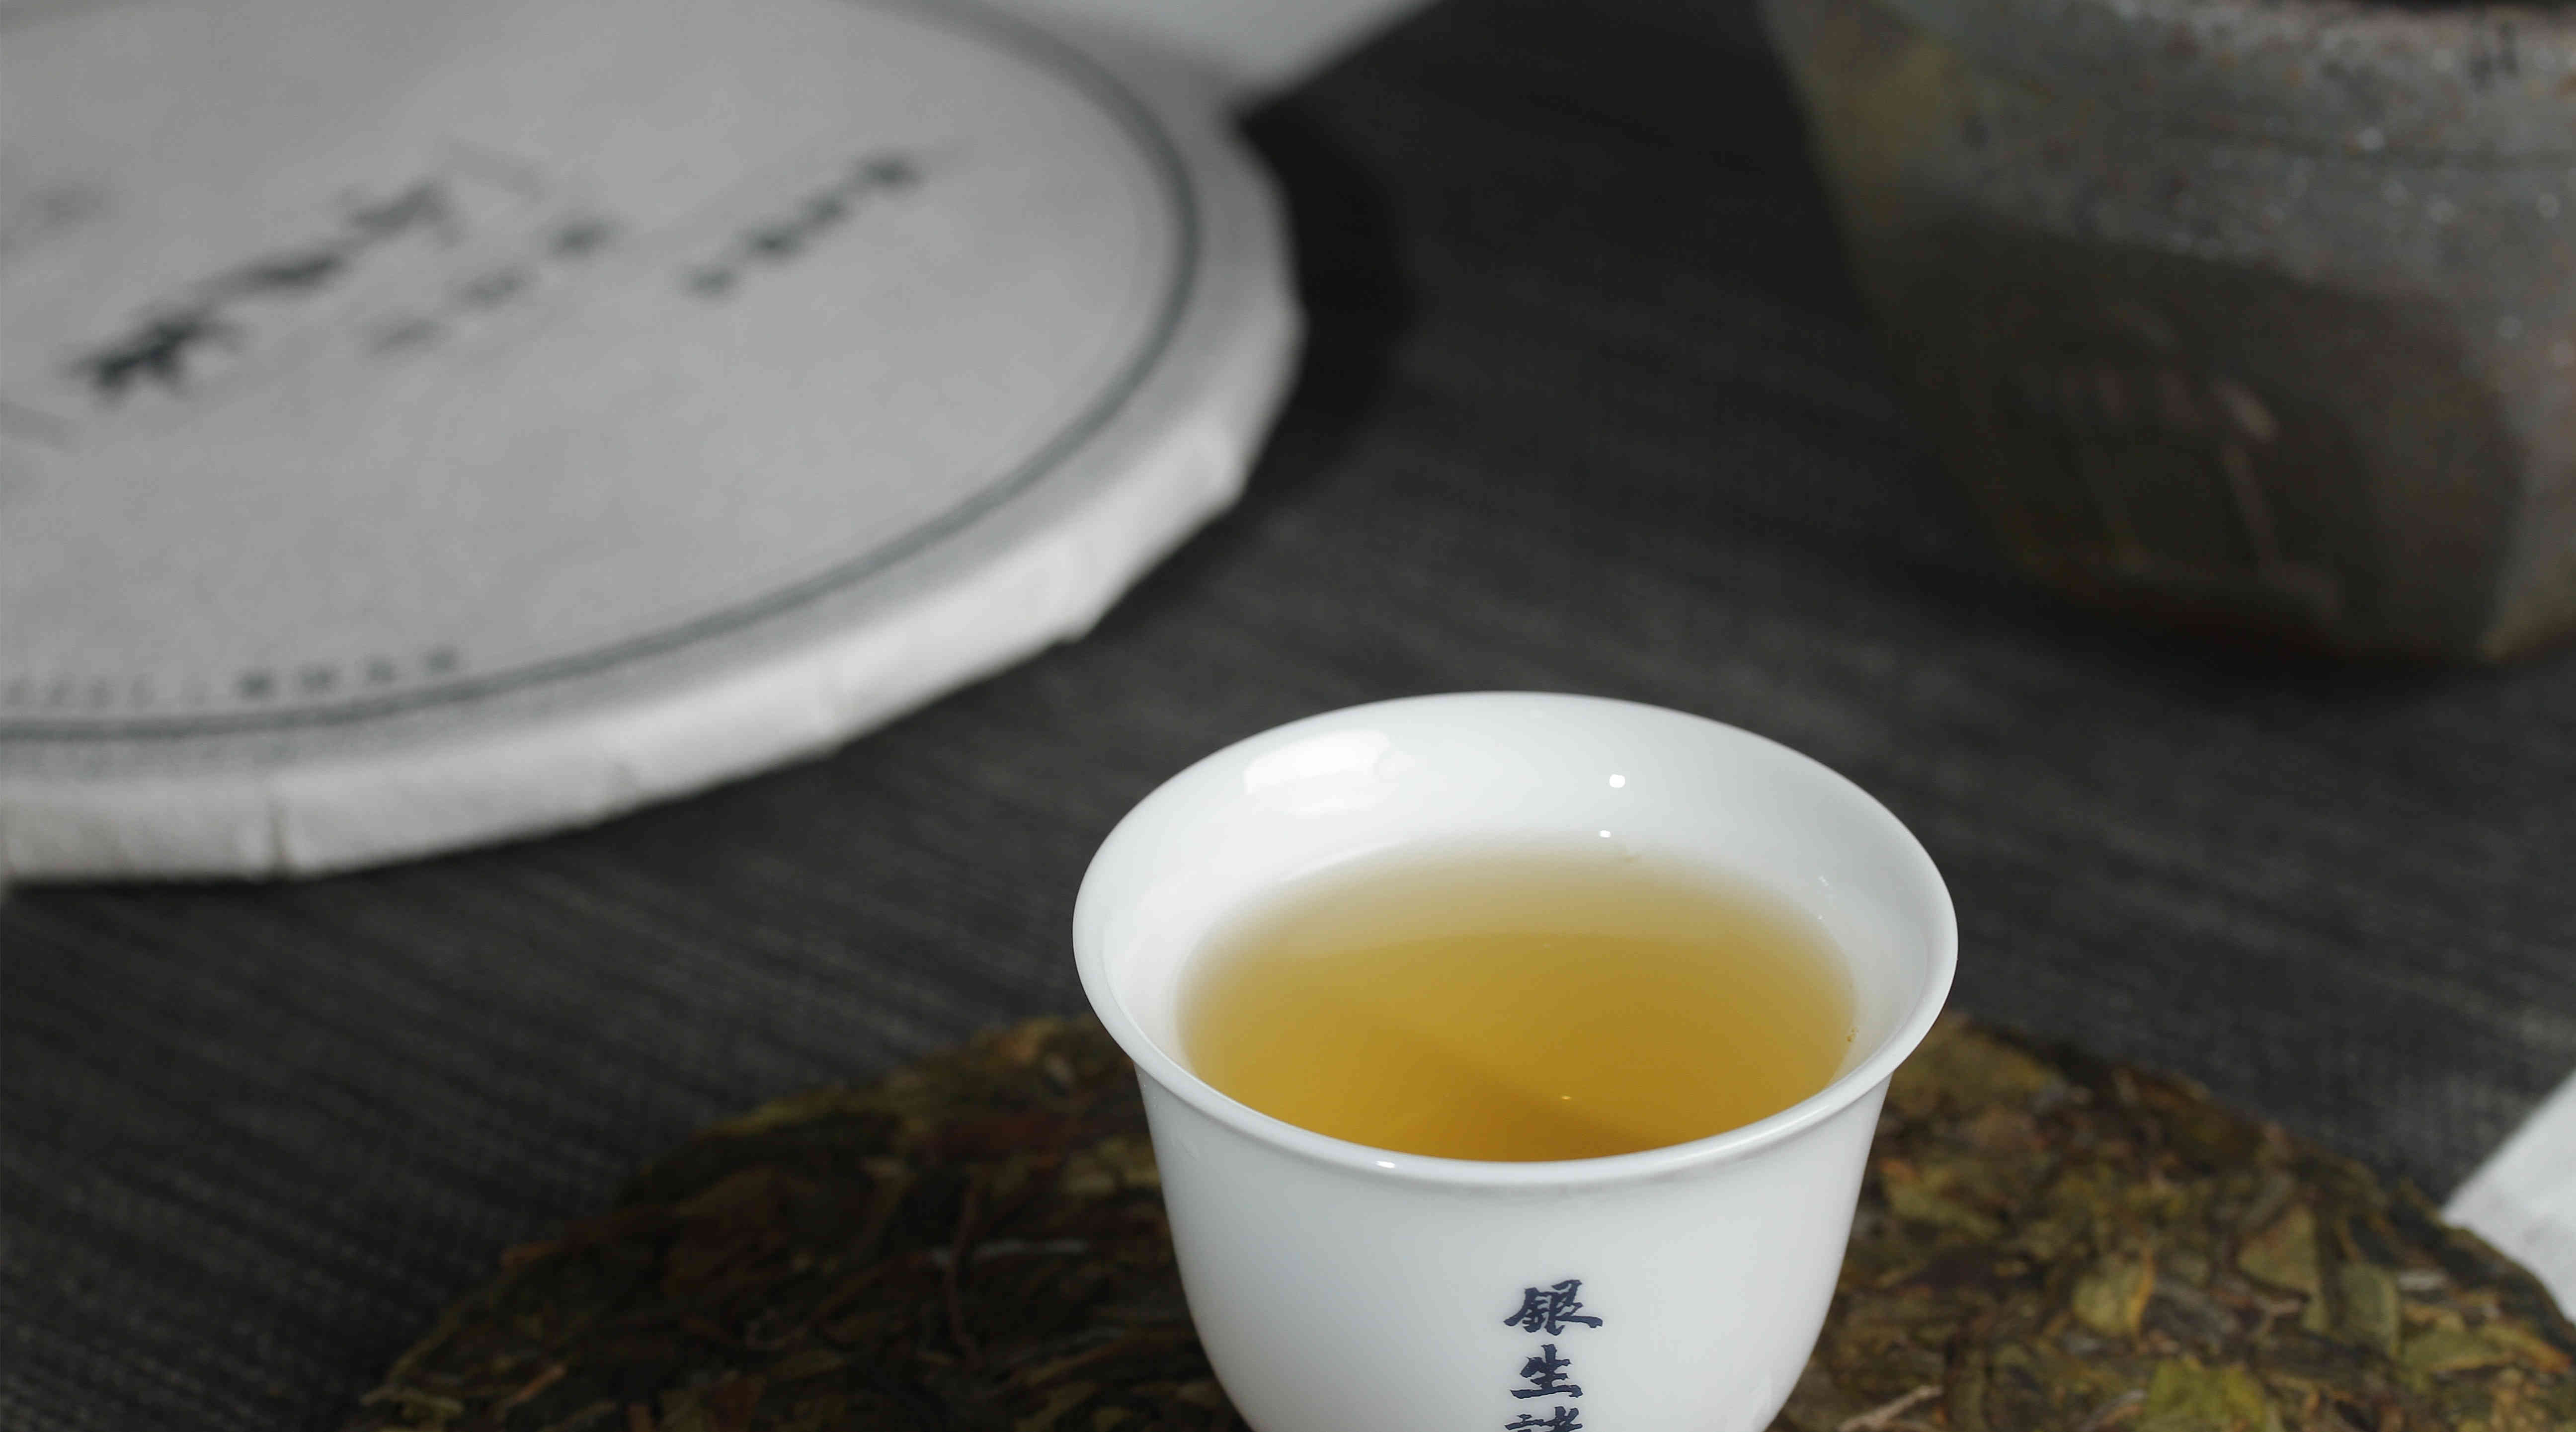 银生诸山 普洱生茶 「小户赛」黄金叶 高品质 低价格 同时兼得的口粮茶